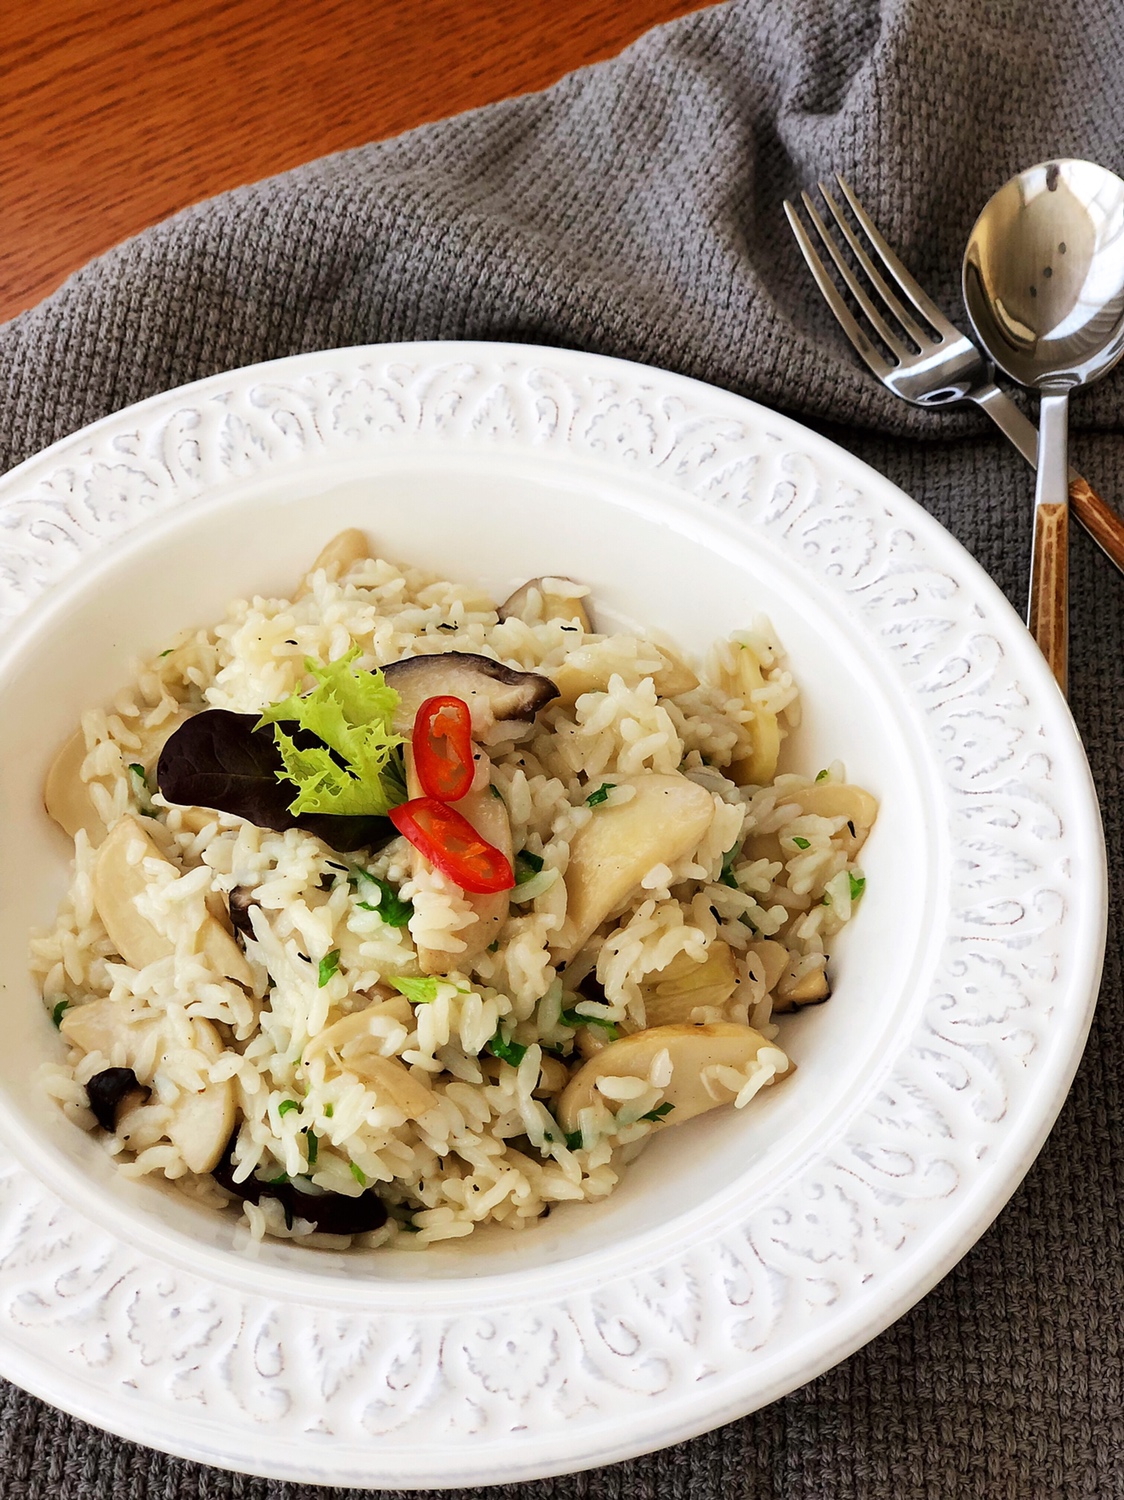 拯救剩米饭—骨汤蘑菇烩饭